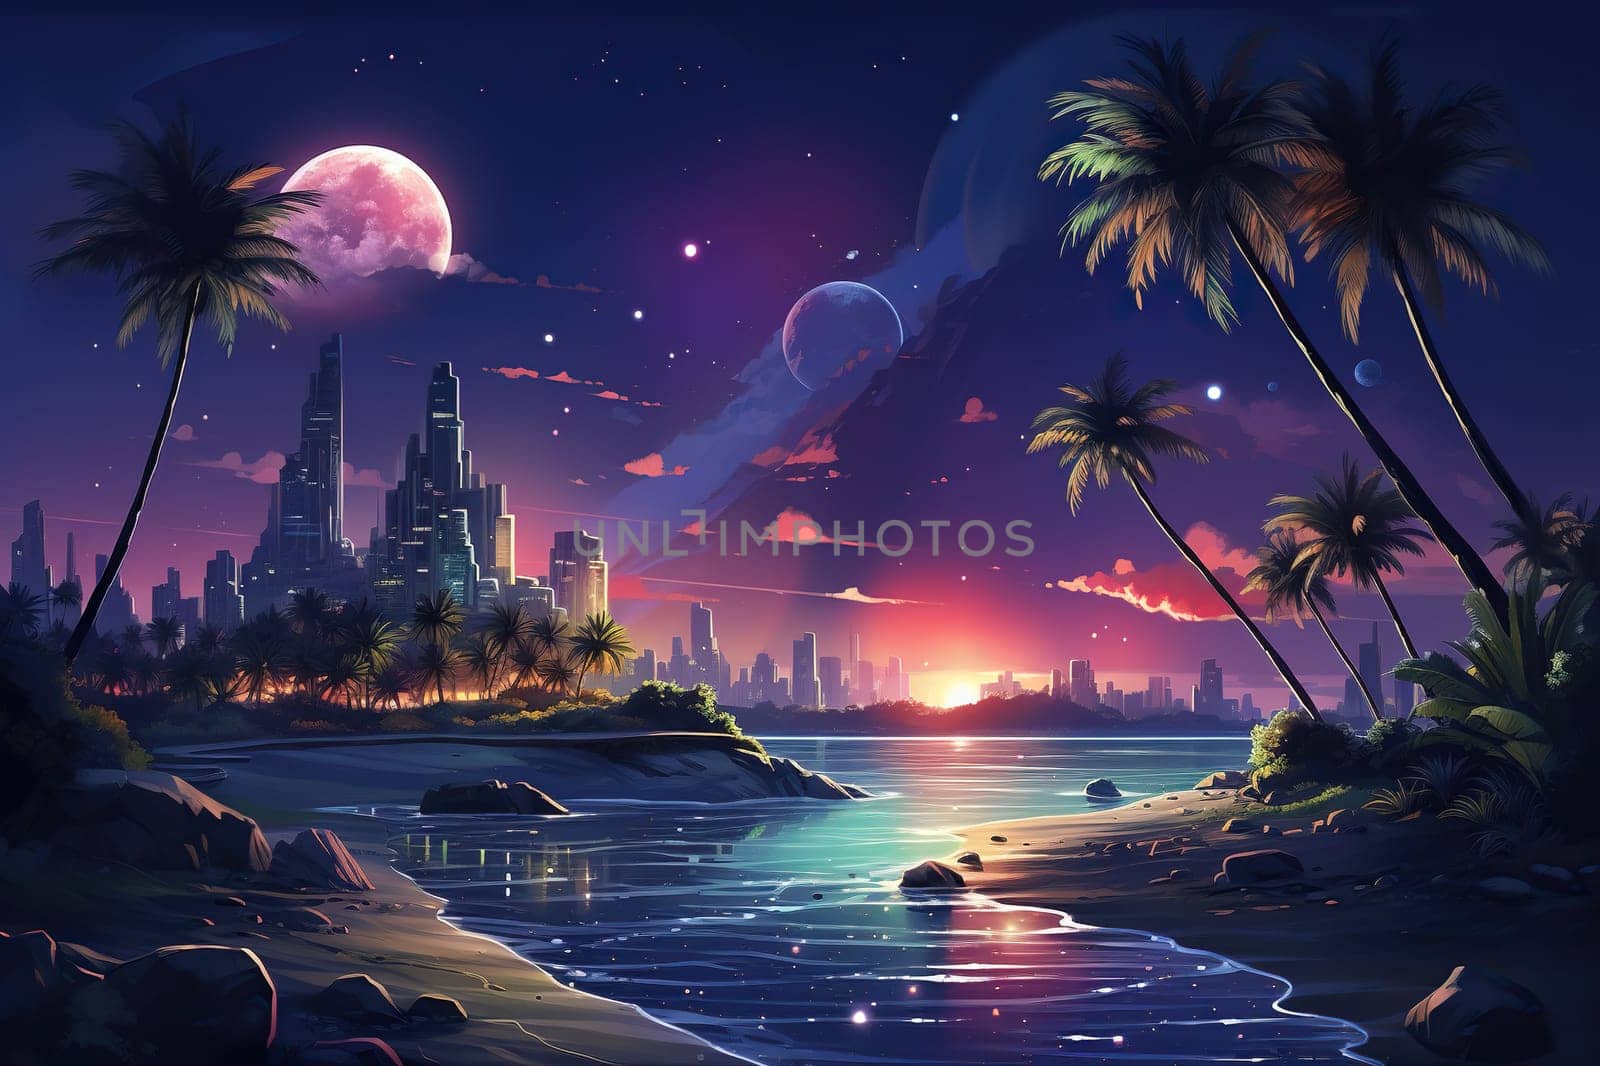 Retro Futuristic landscape with sea, palm trees and skyscrapers. Generative AI by Vovmar